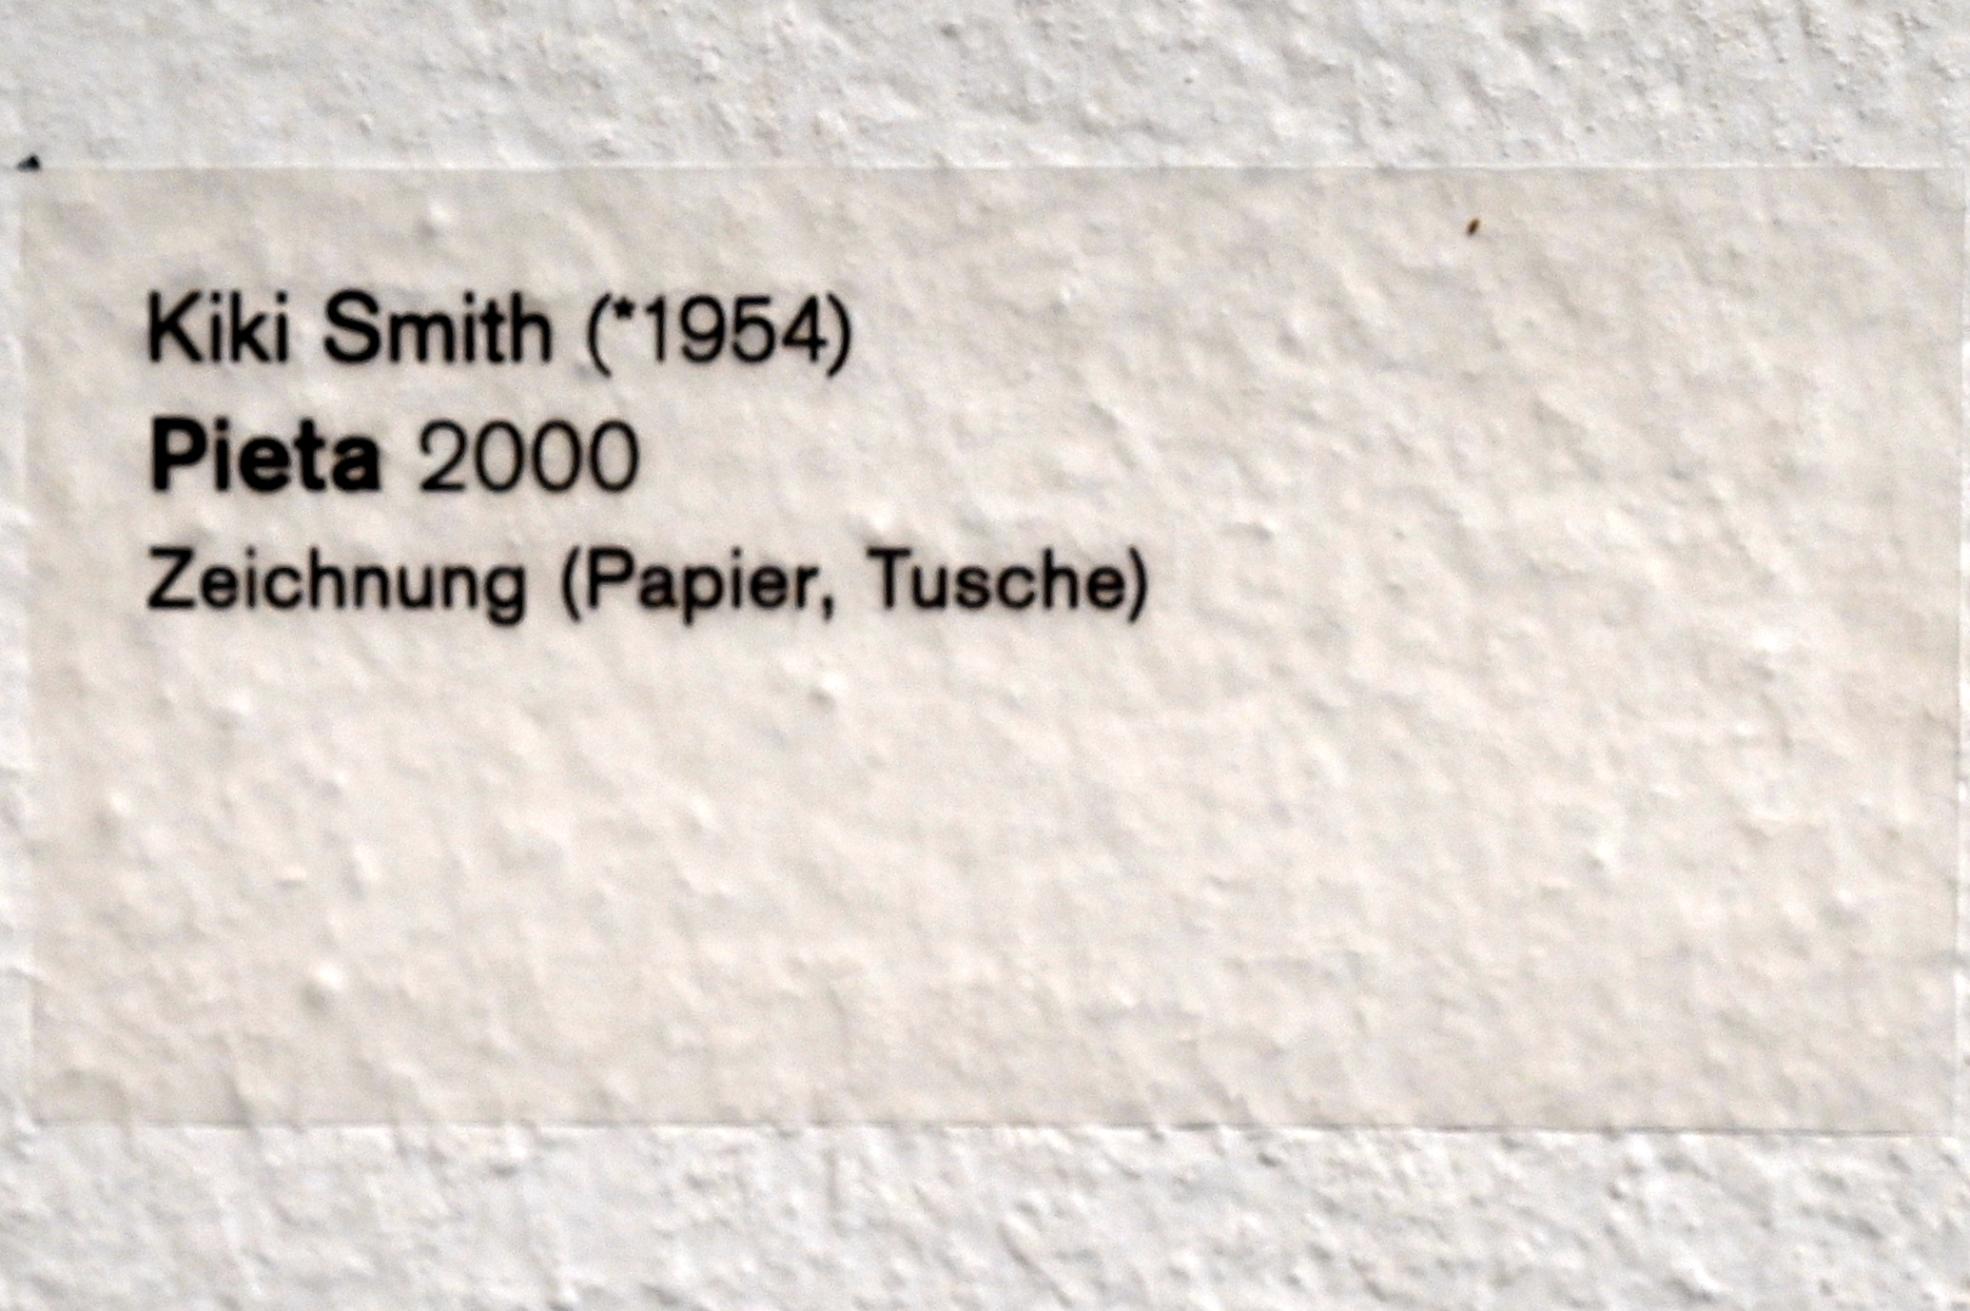 Kiki Smith (1992–2000), Pieta, Ulm, Museum Ulm, Saal 4, 2000, Bild 2/2